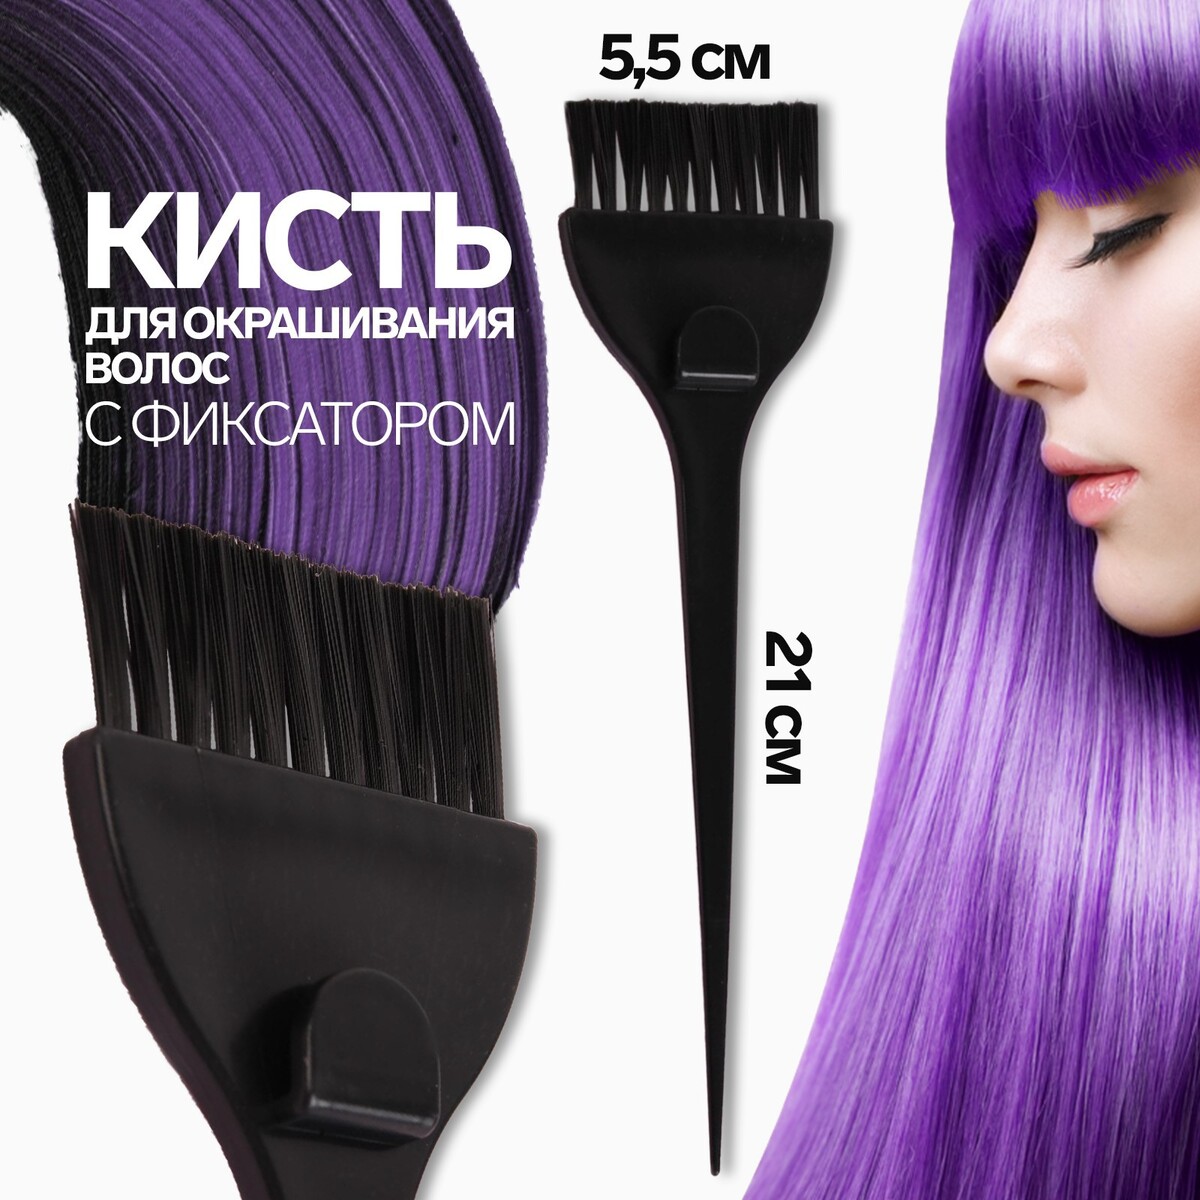 Кисть для окрашивания волос с фиксатором, 21 х 5,5 см, цвет черный мелки для окрашивания волос пурпурный 1 шт 2 шт 5133686 2p